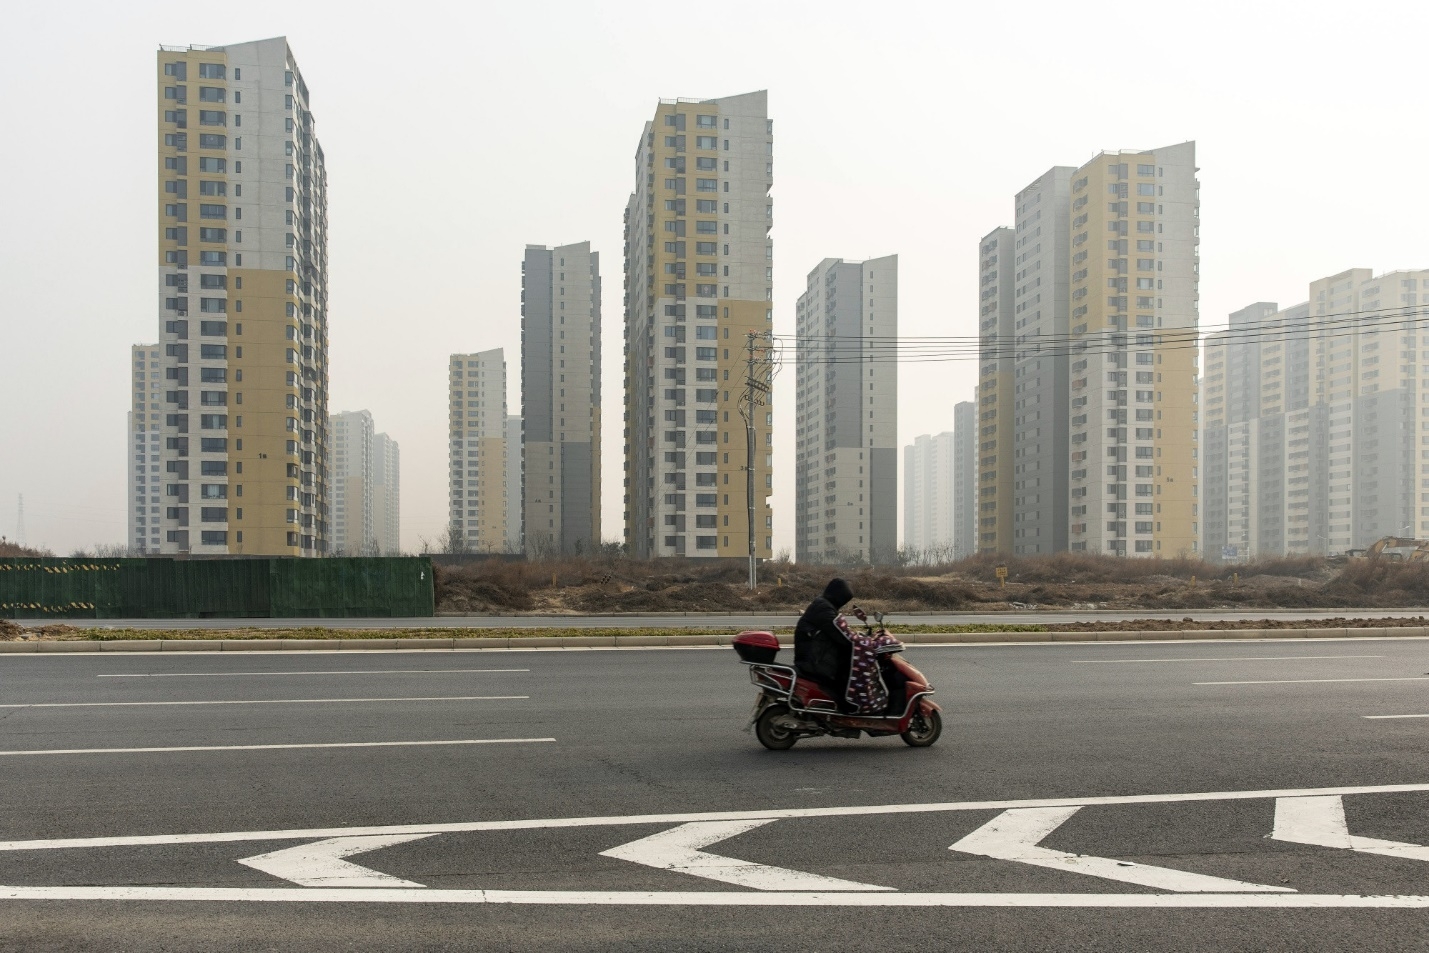 Chuyên gia chỉ mối lo của bất động sản Trung Quốc dù thị trường ấm lên